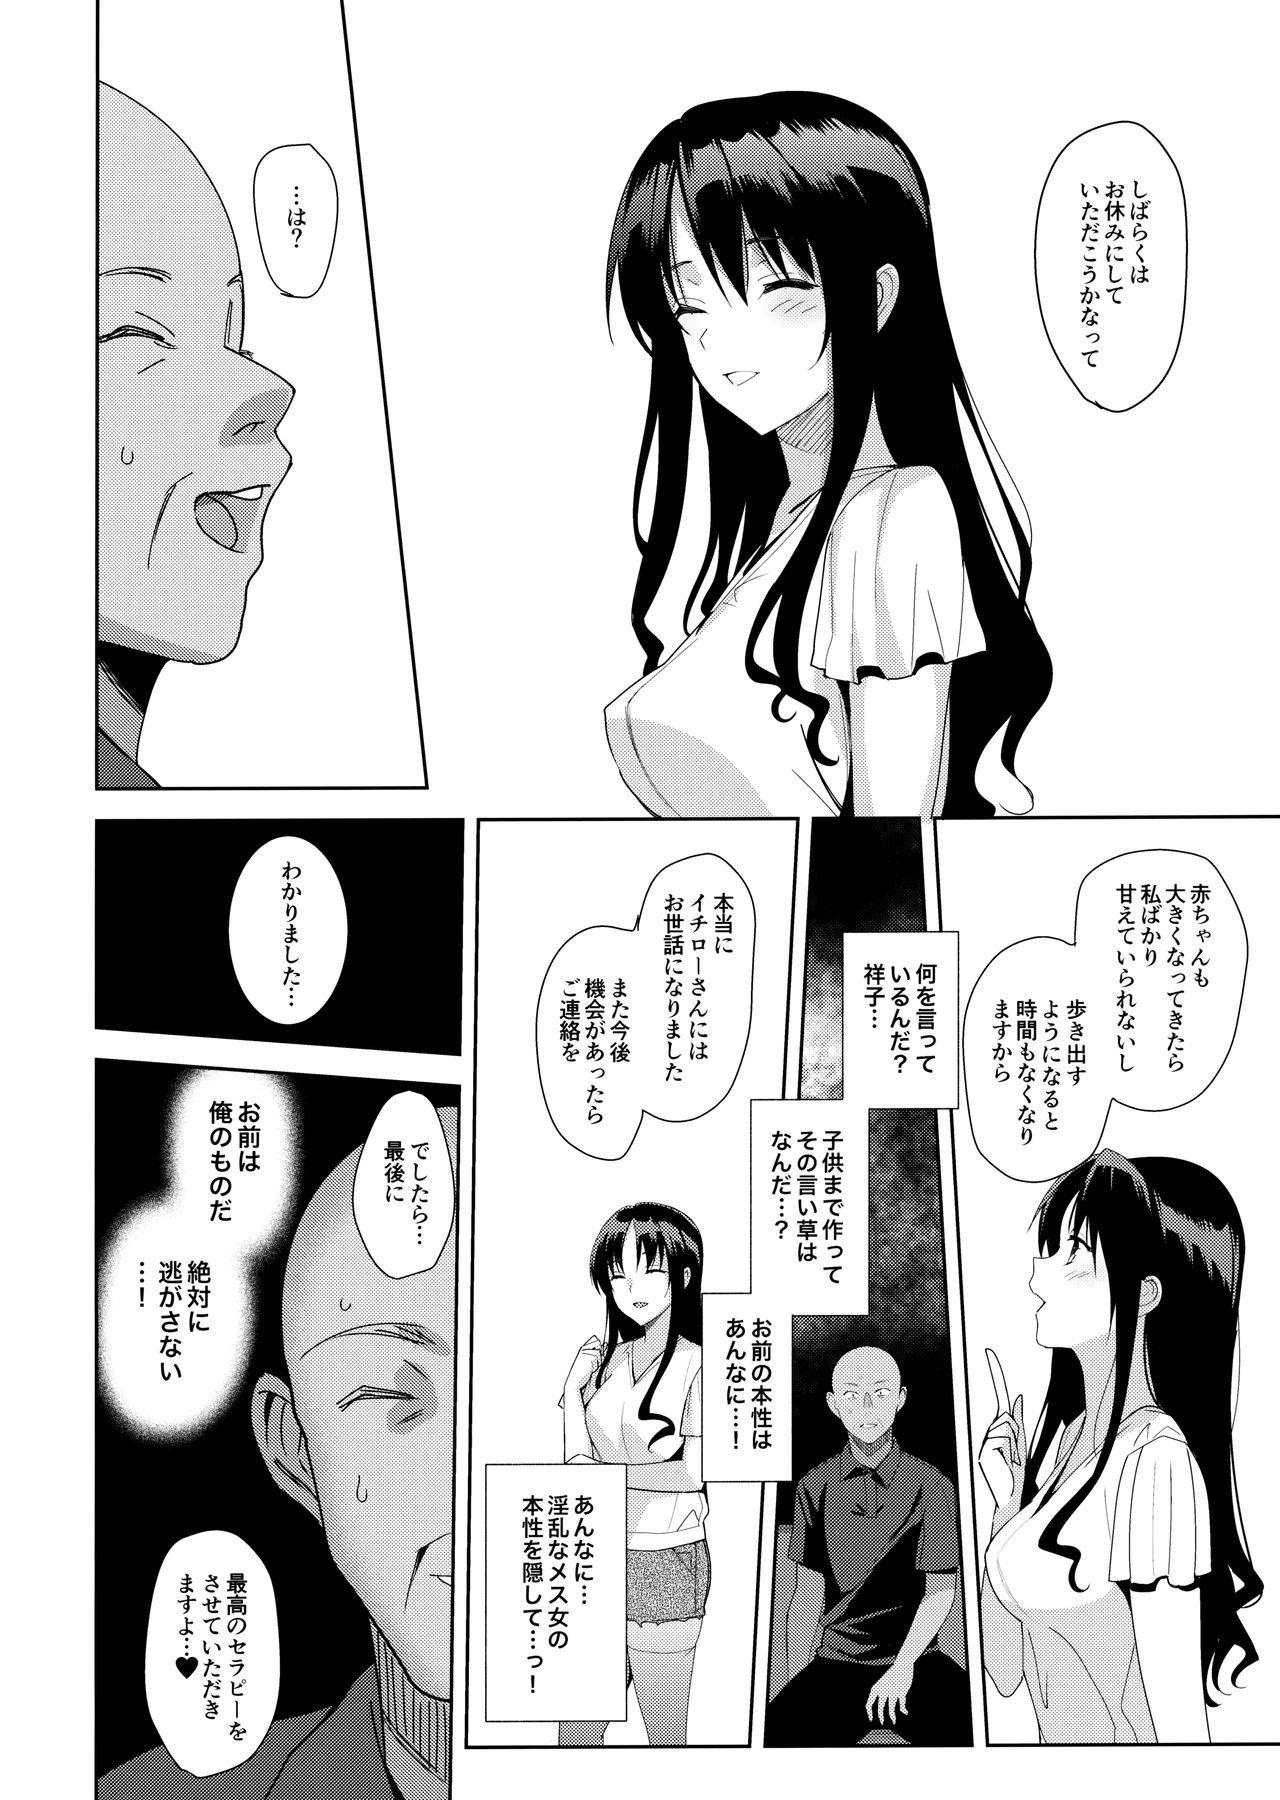 Cachonda Mesmerism 6 + Mesmerism x Kusakabe Yuiko - Original Cums - Page 5